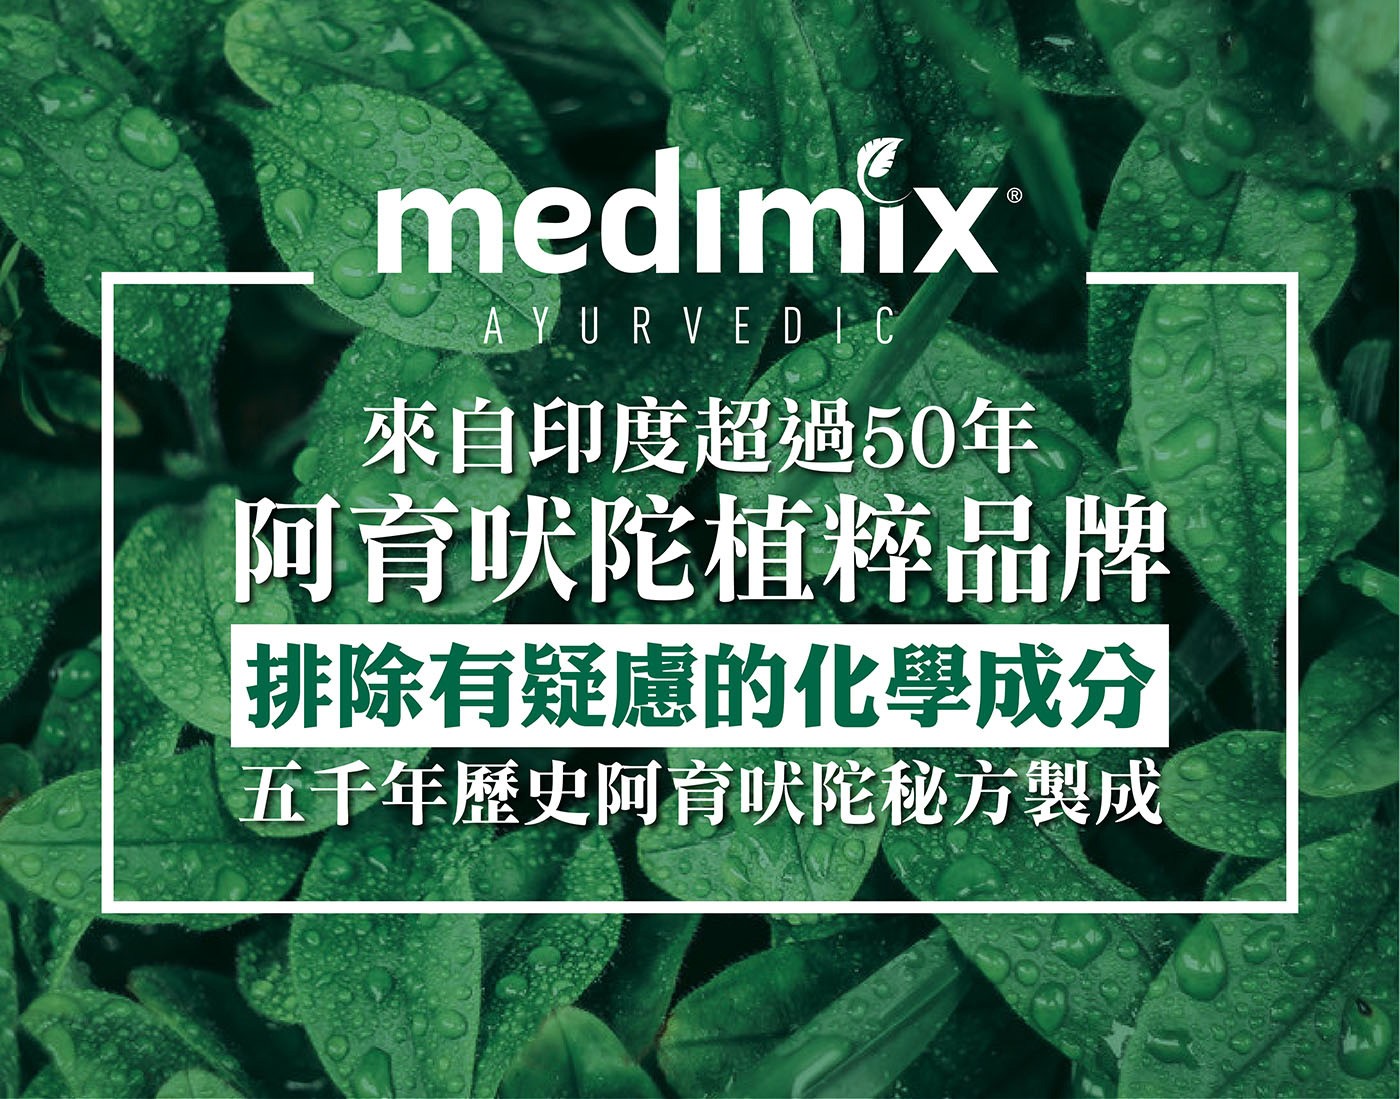 Medimix 印度綠寶石皇室藥草浴美肌皂 來自阿育吠陀植粹品牌